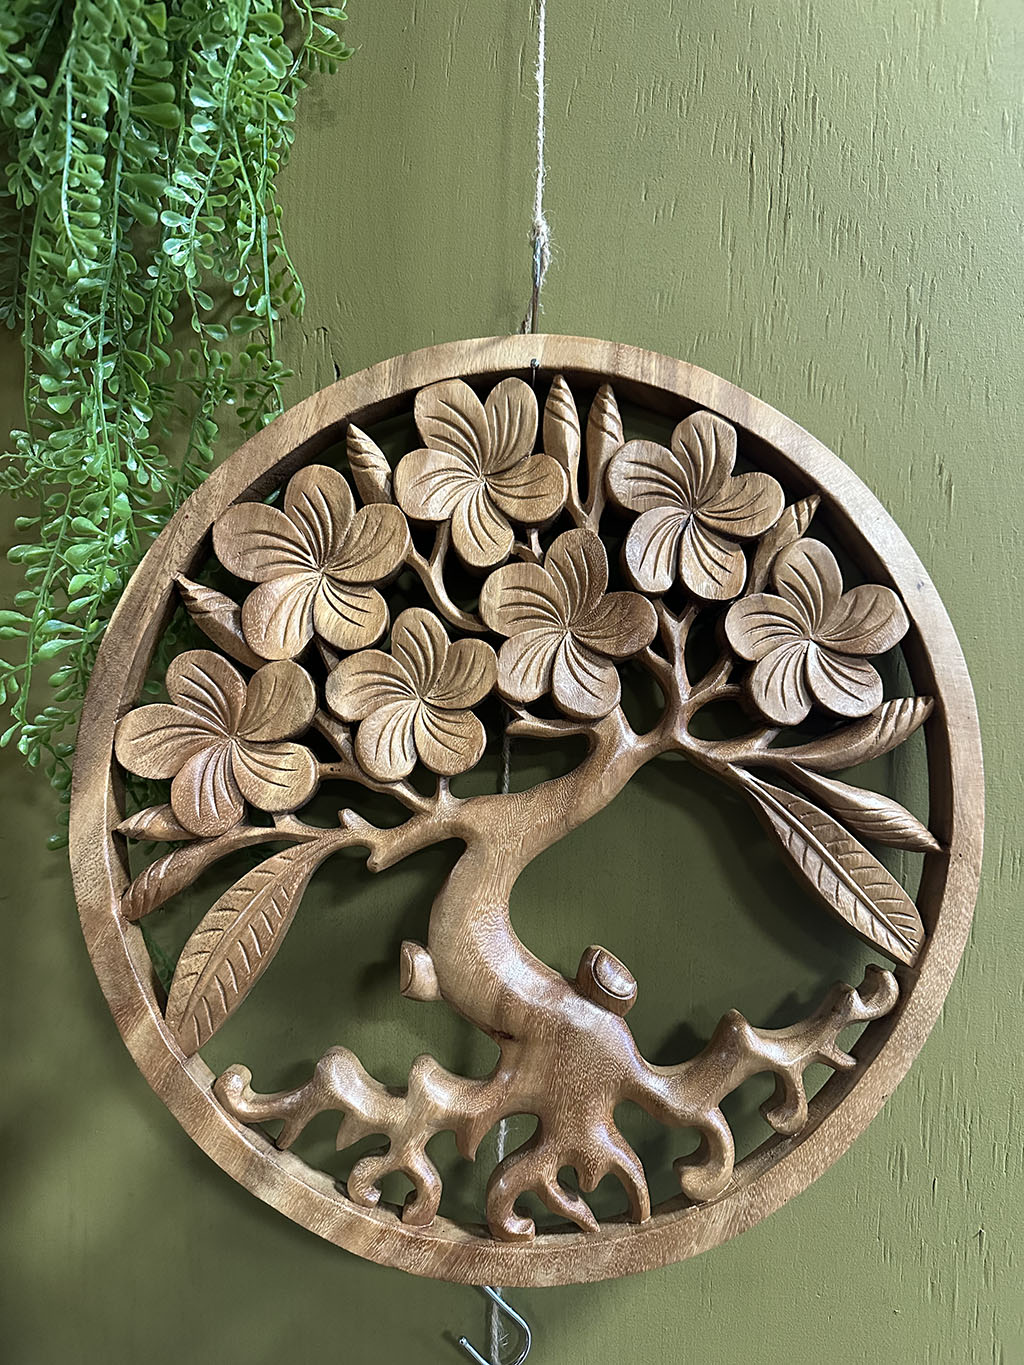 Deze tot in detail uitgesneden houten levensboom is een pronkstuk aan uw muur. Prachtig uit één stuk hout gesneden!